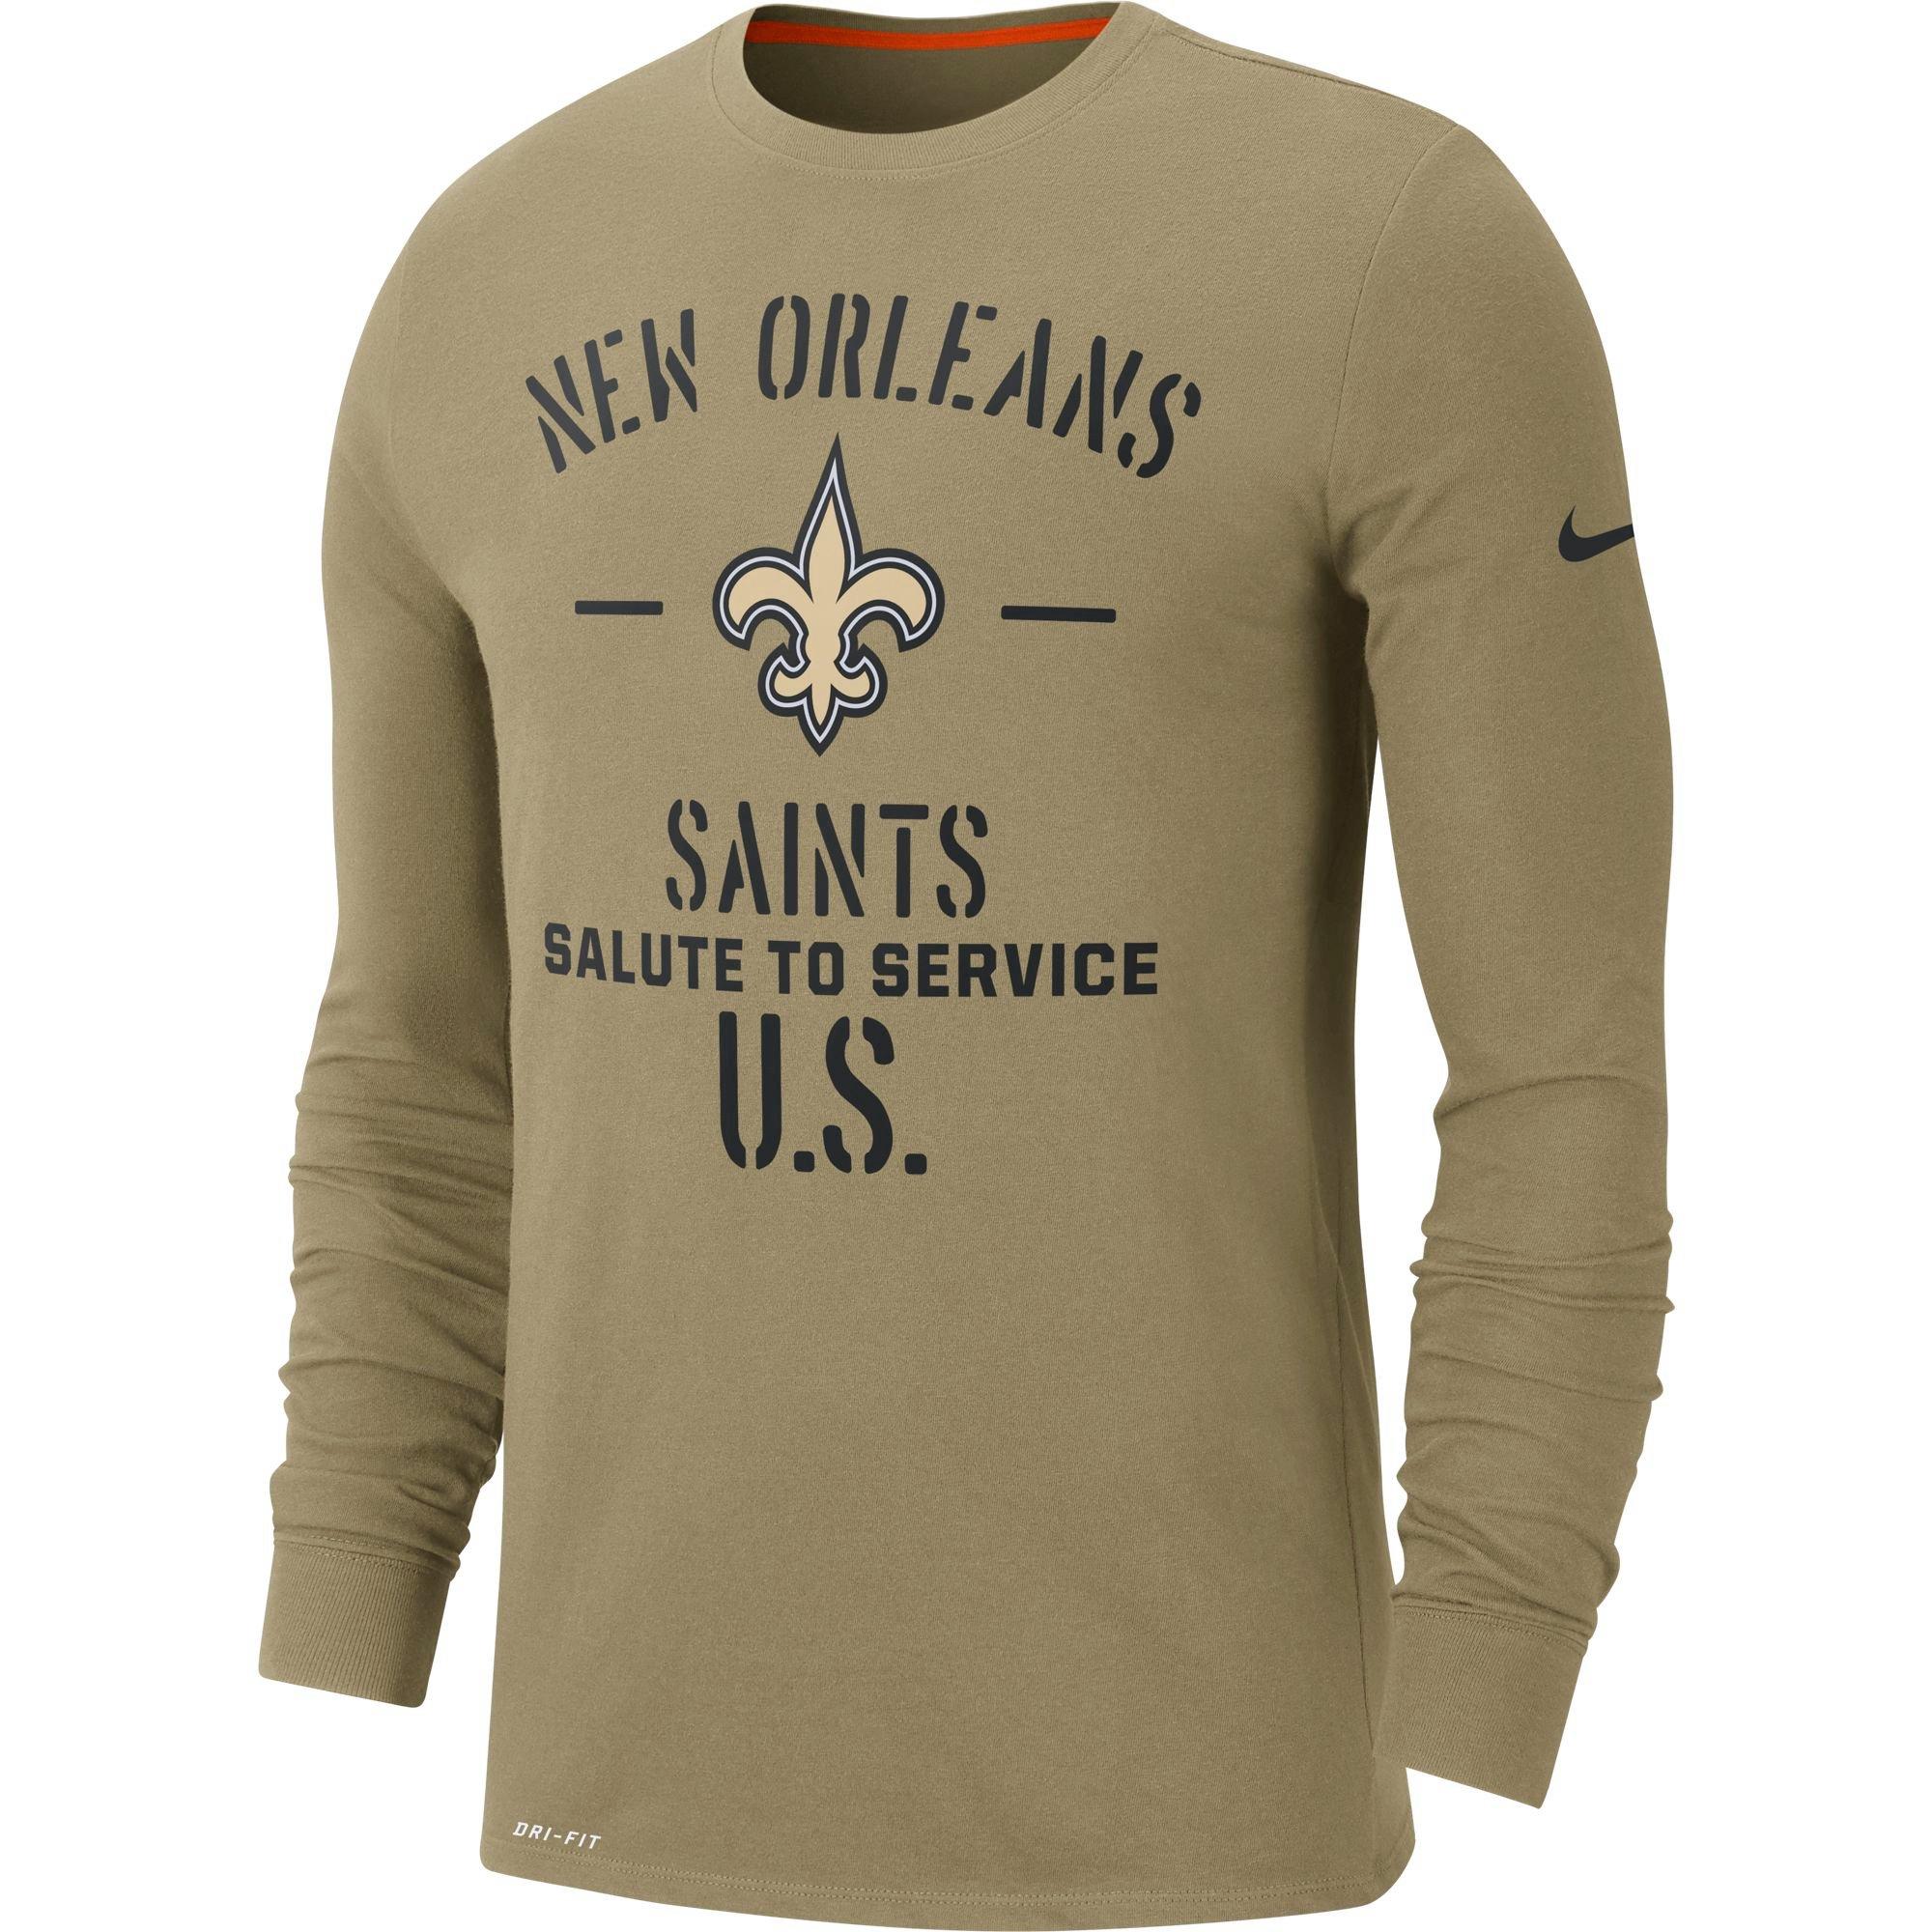 mens new orleans saints shirts